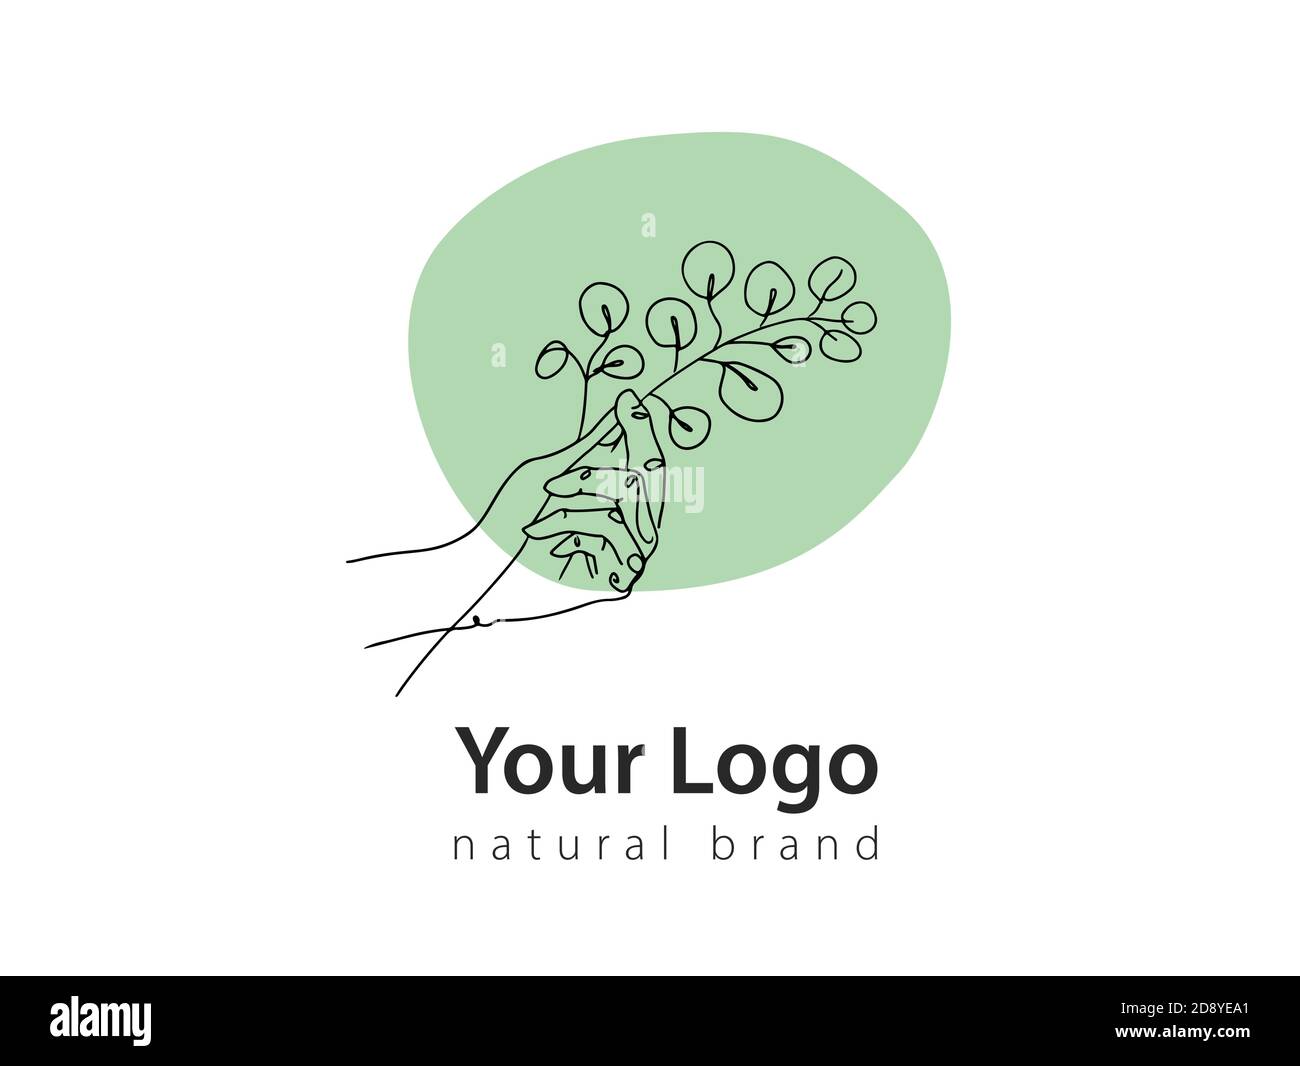 Logo vectoriel minimaliste dessiné à la main. Contient une illustration de l'eucalyptus pour la promotion de la marque ECO Illustration de Vecteur